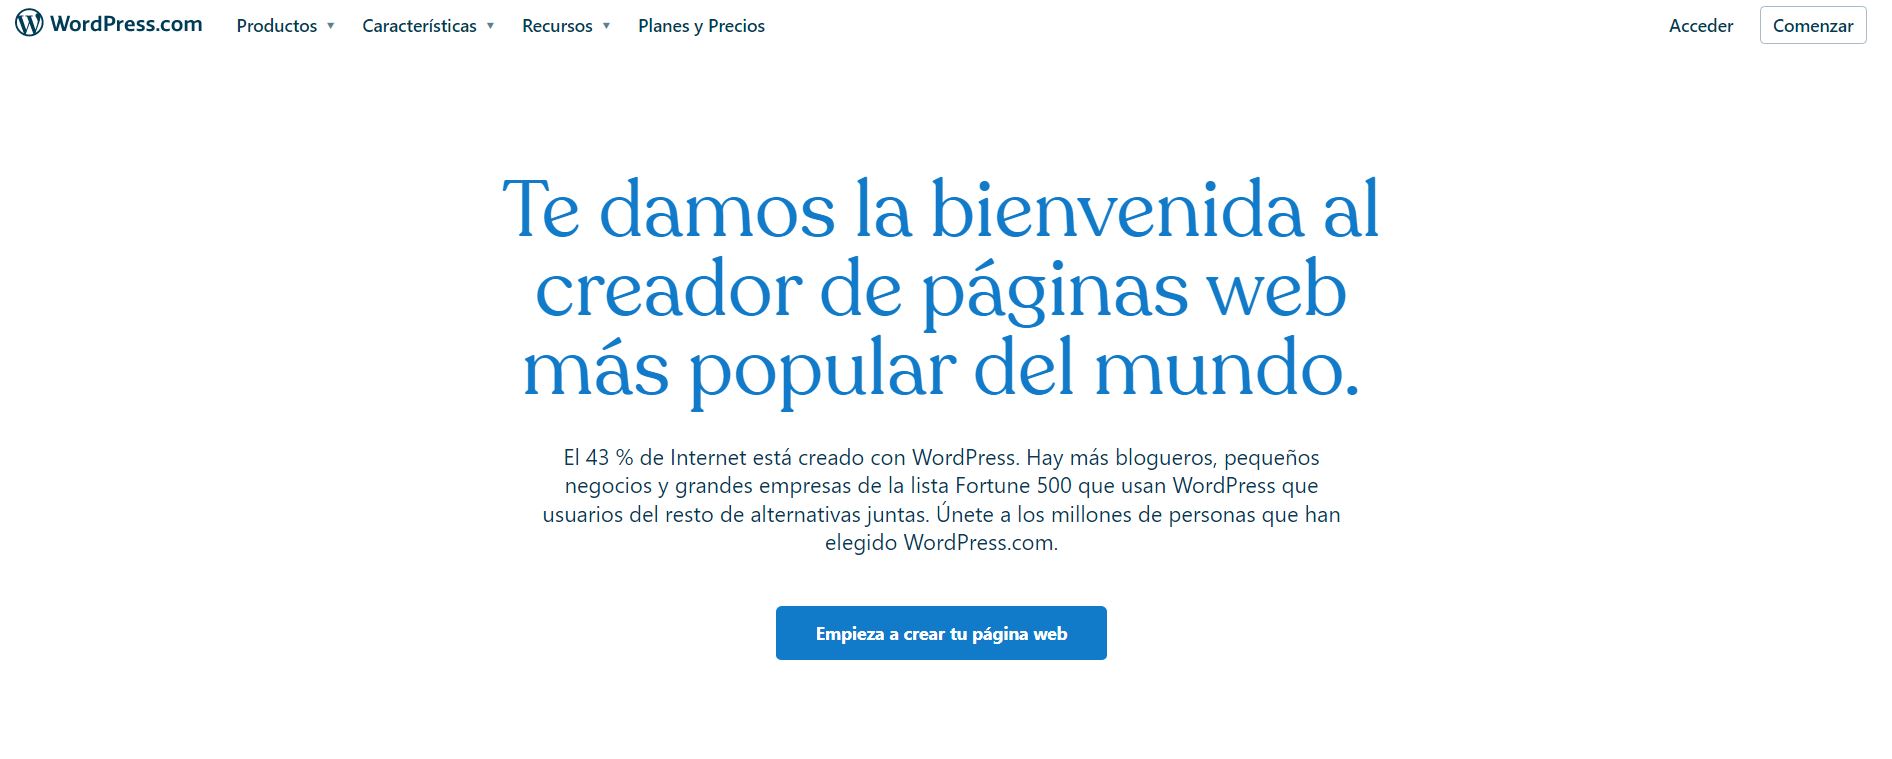 El sitio web de WordPress.com